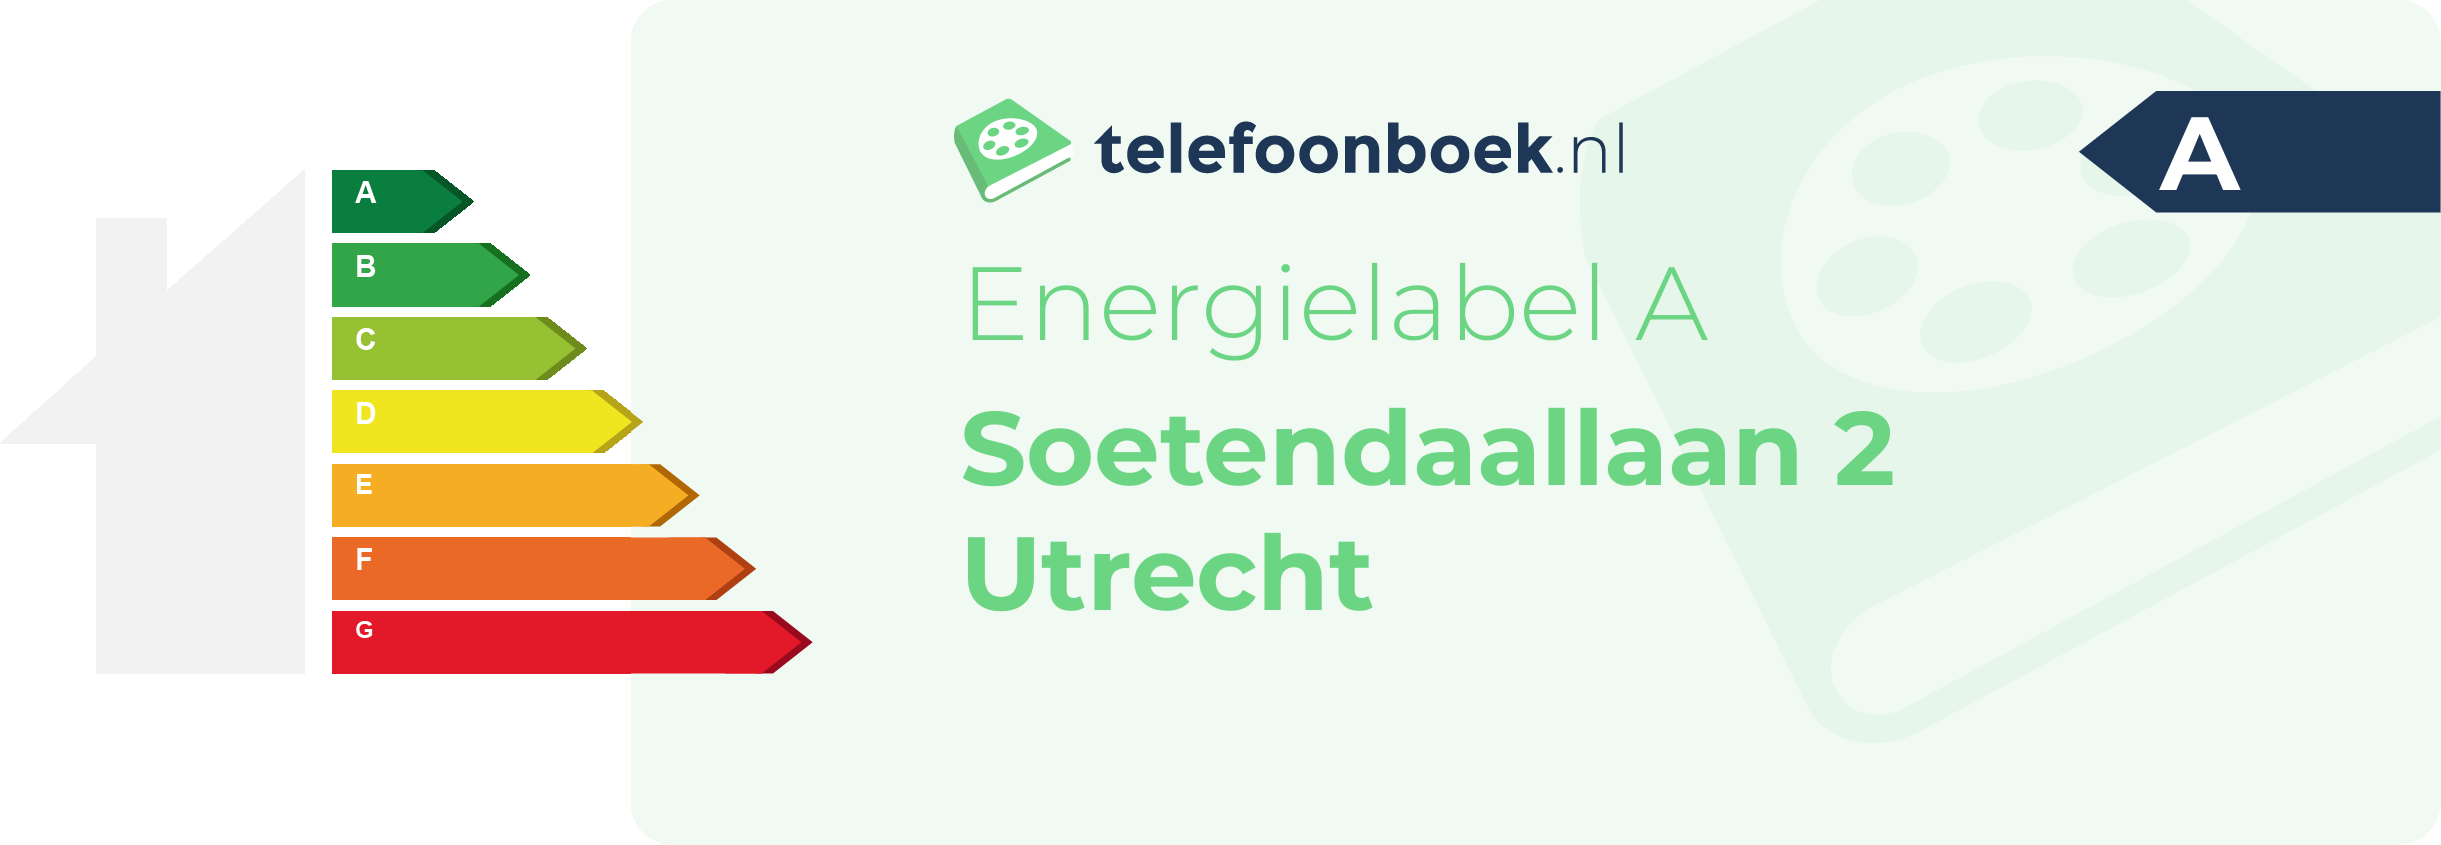 Energielabel Soetendaallaan 2 Utrecht